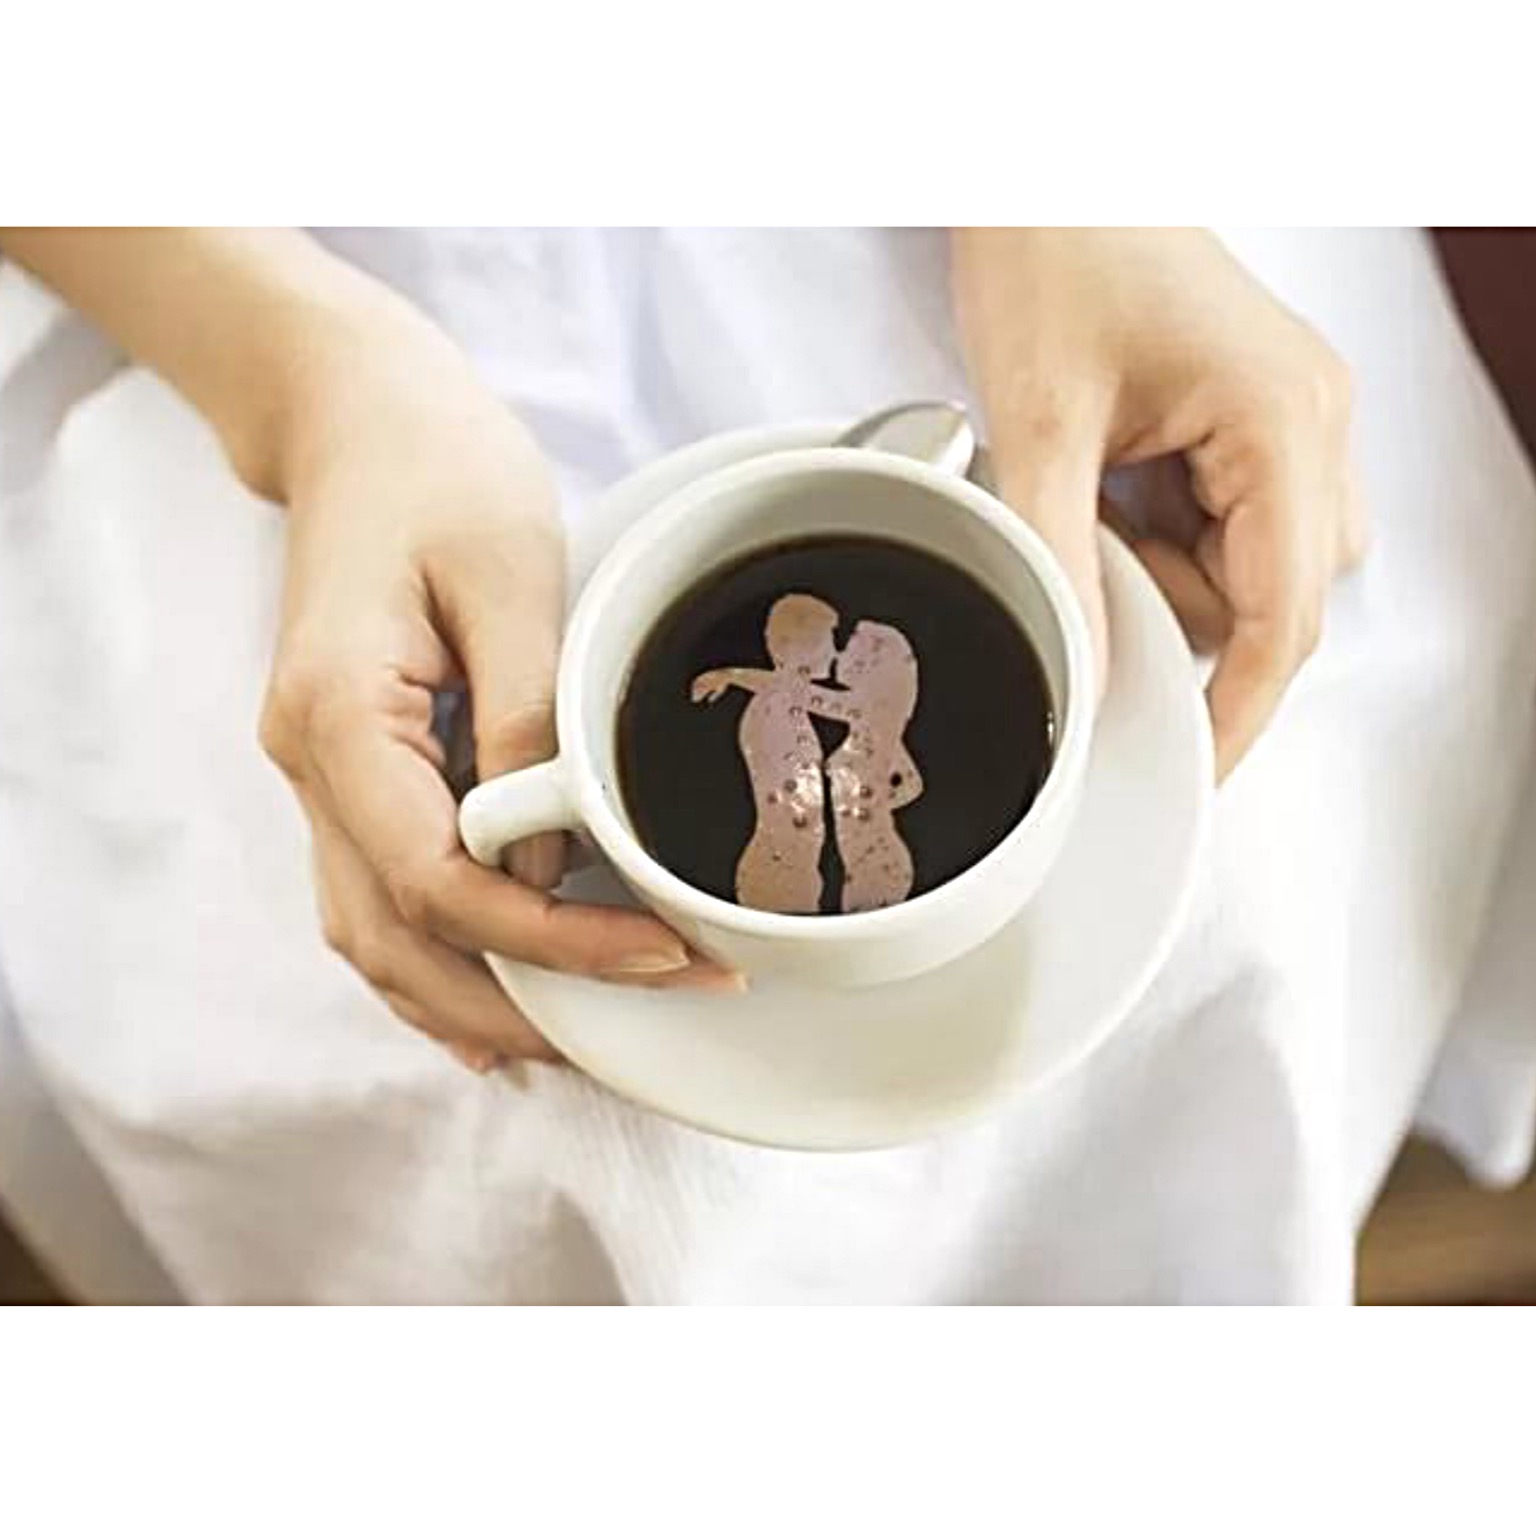 Как взбодриться ранним утром - кофе и сексуальная зарядка с женой